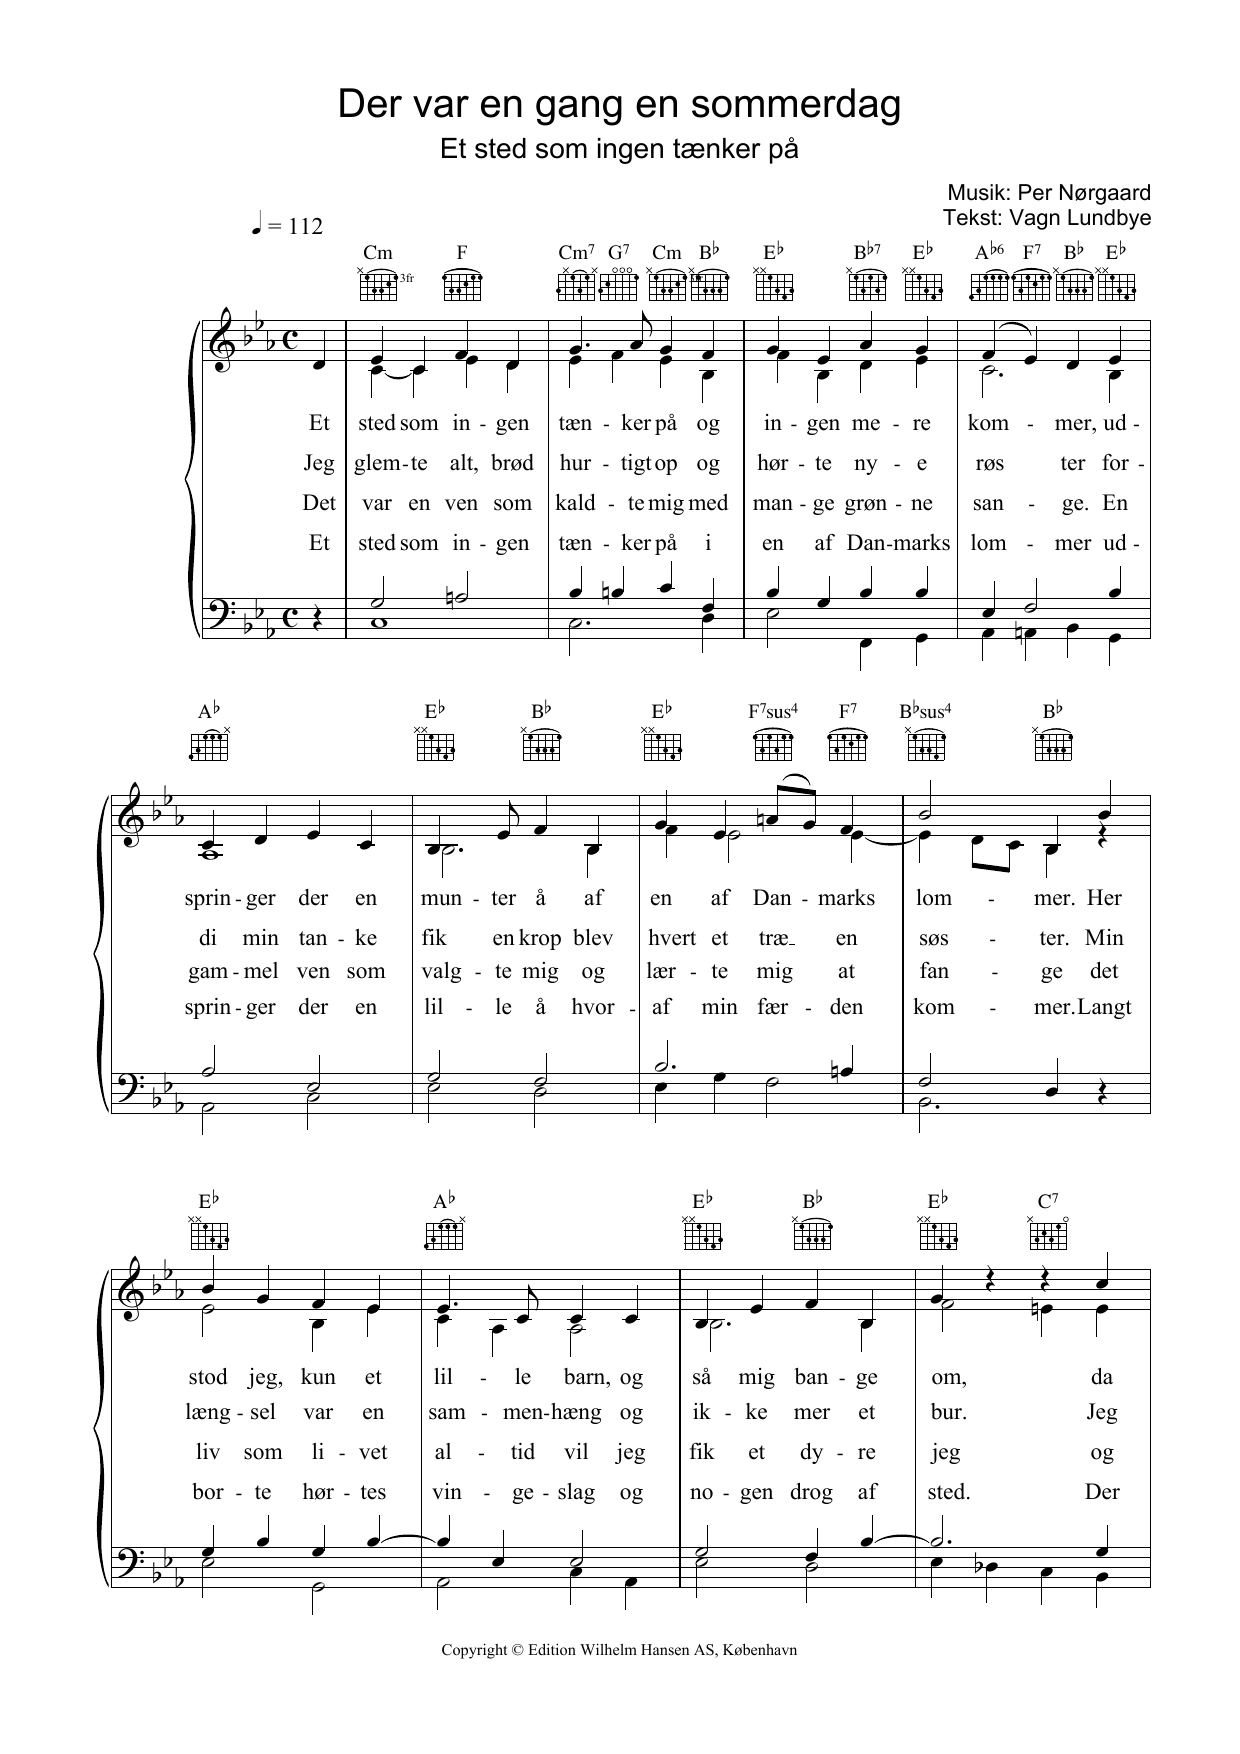 Per Nørgaard Der Var En Gang En Sommerdag sheet music notes and chords. Download Printable PDF.